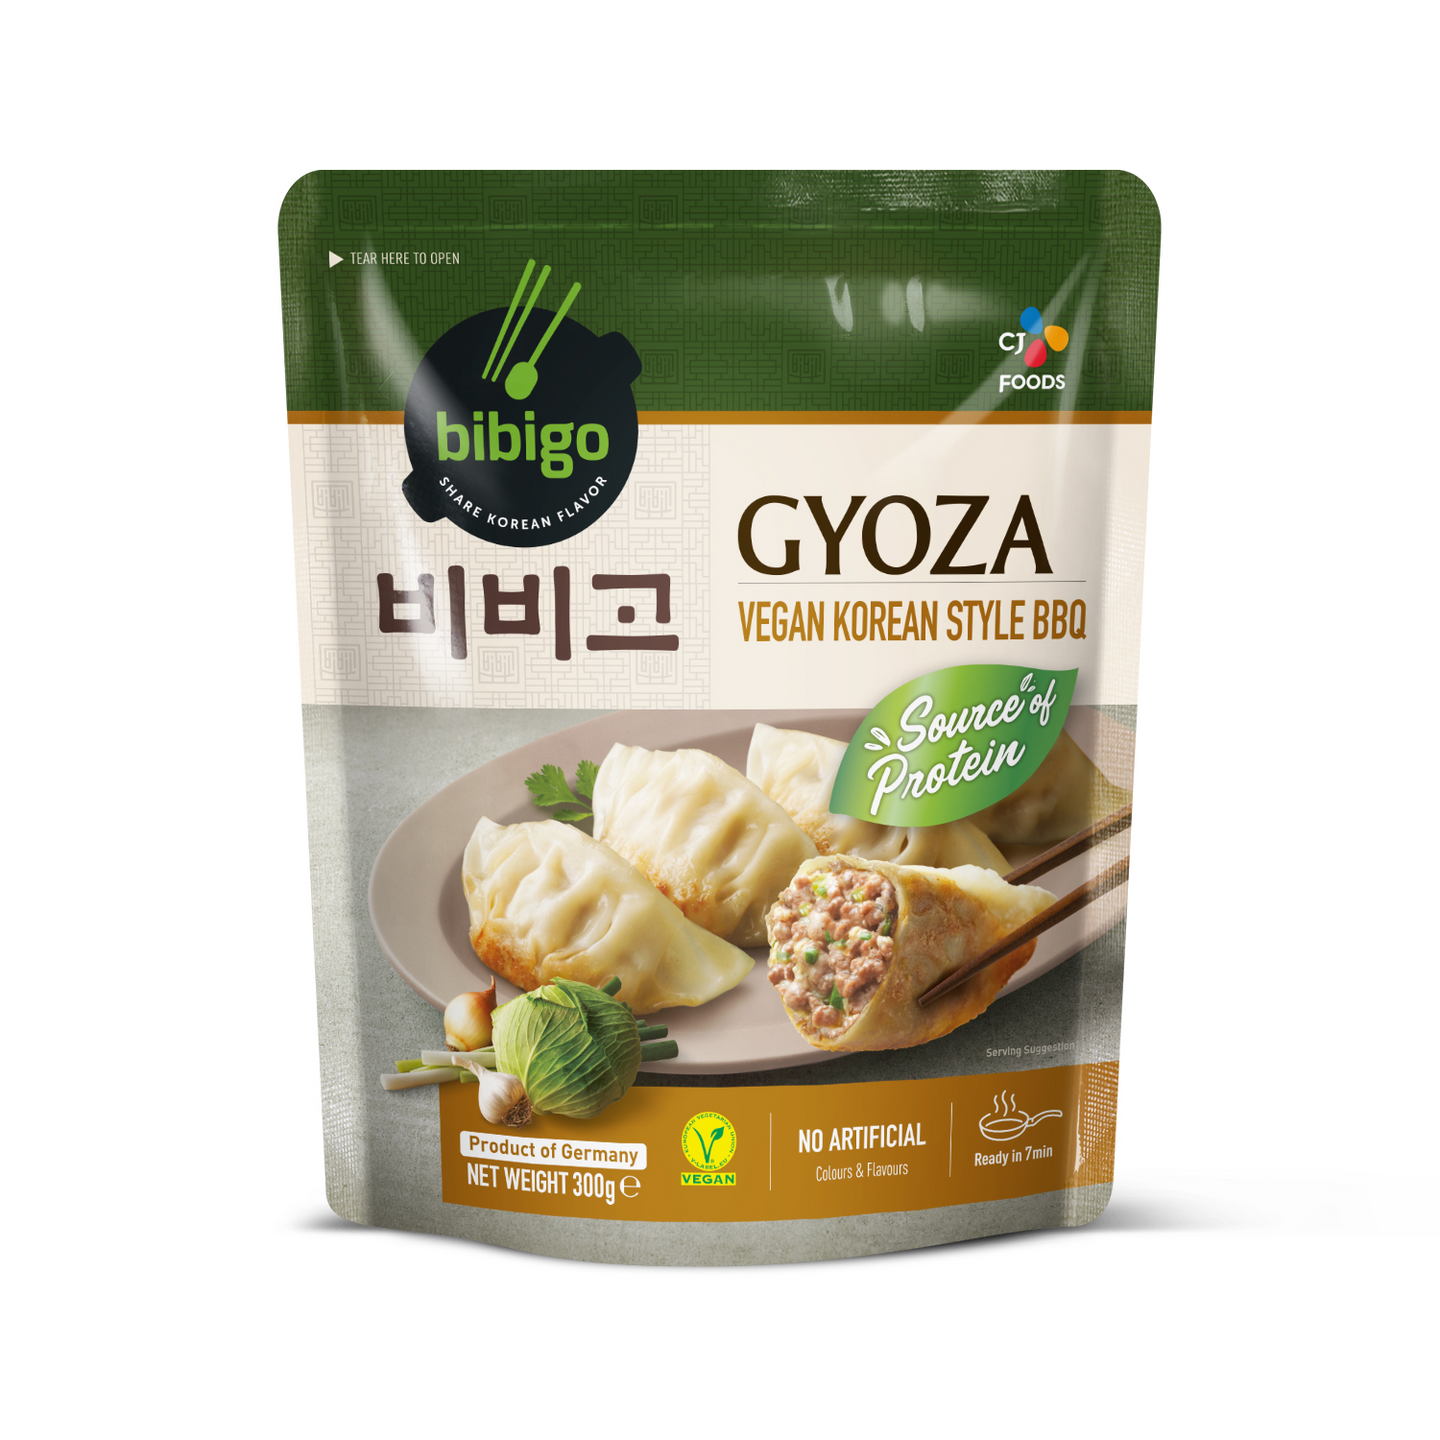 Bibigo Gyoza Dumpling Vegan Korean BBQ frozen